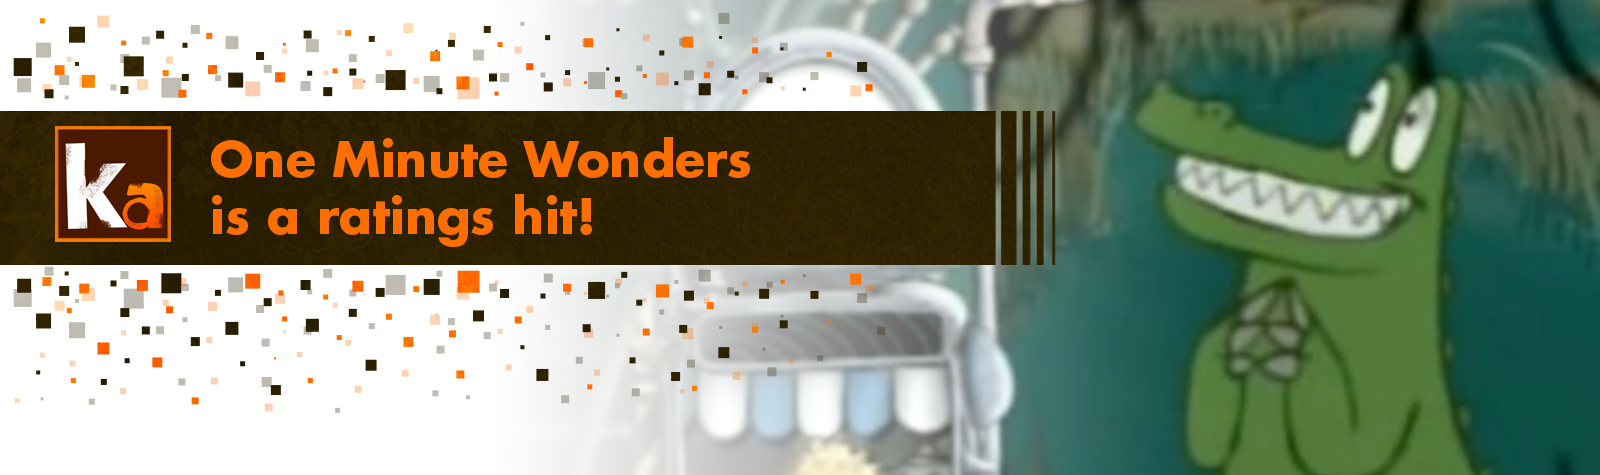 One Minute Wonders is a ratings hit!